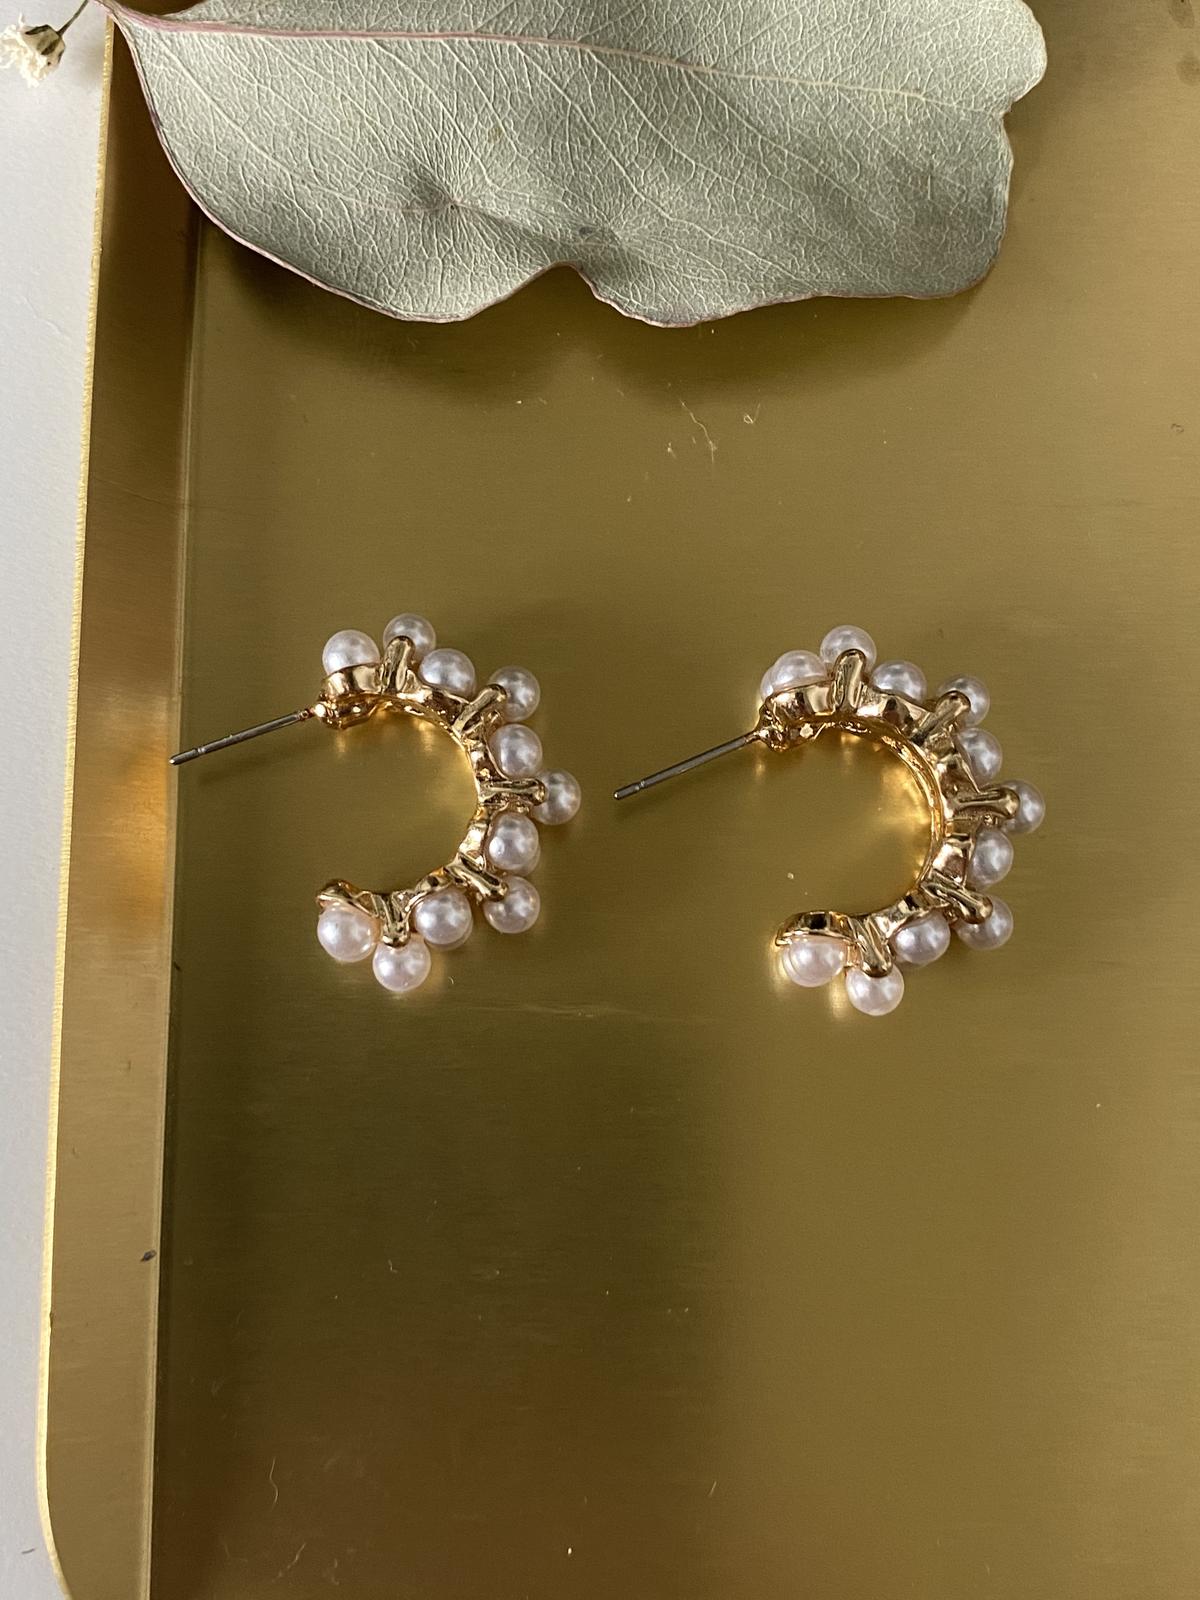 Náušnice s perličkami – bižuterie - Obrázek č. 3